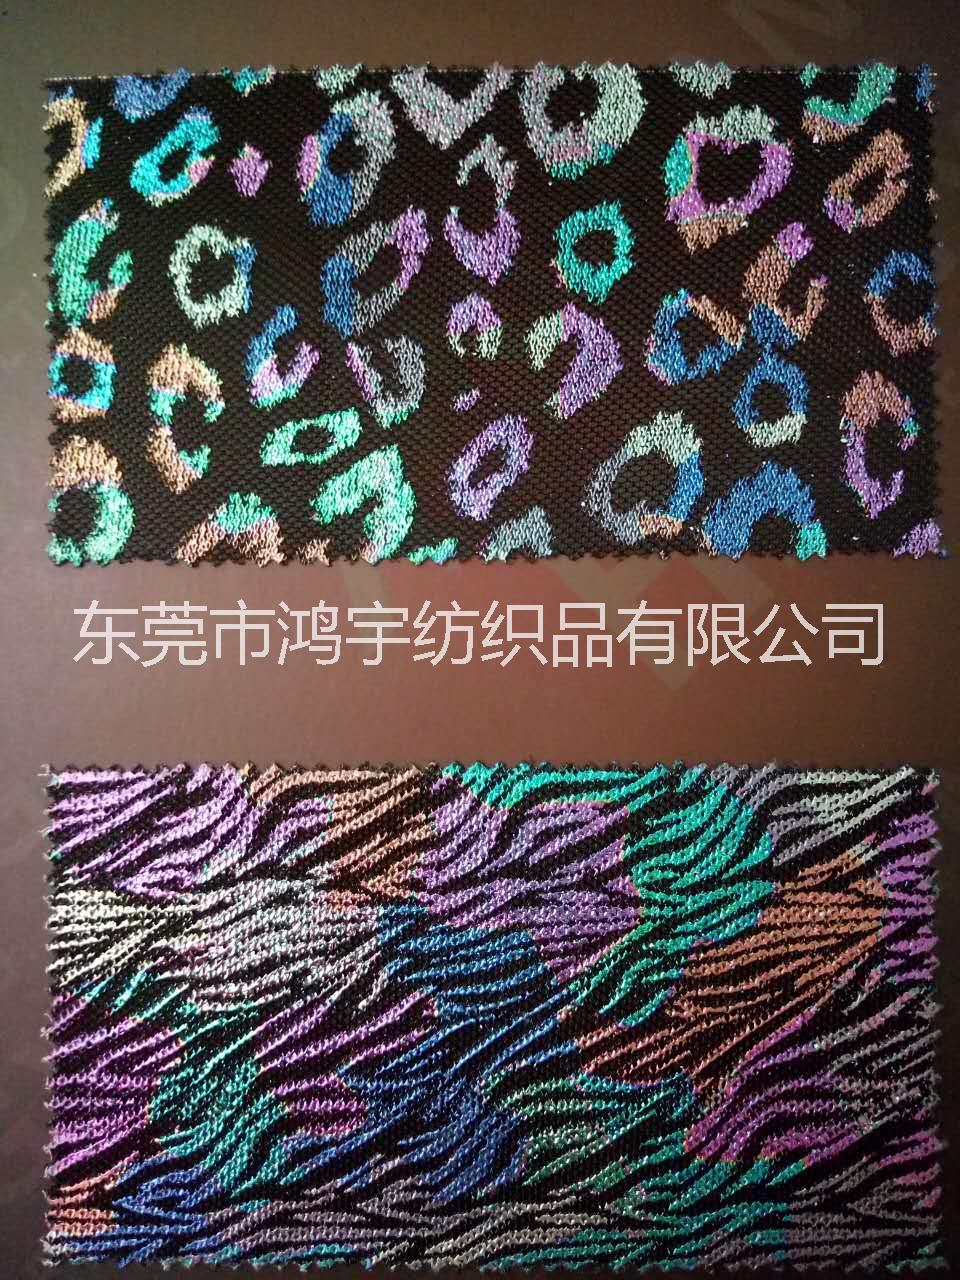 供应用于鞋材的三明治网布厂家广东东莞深圳三明治网布供应报价